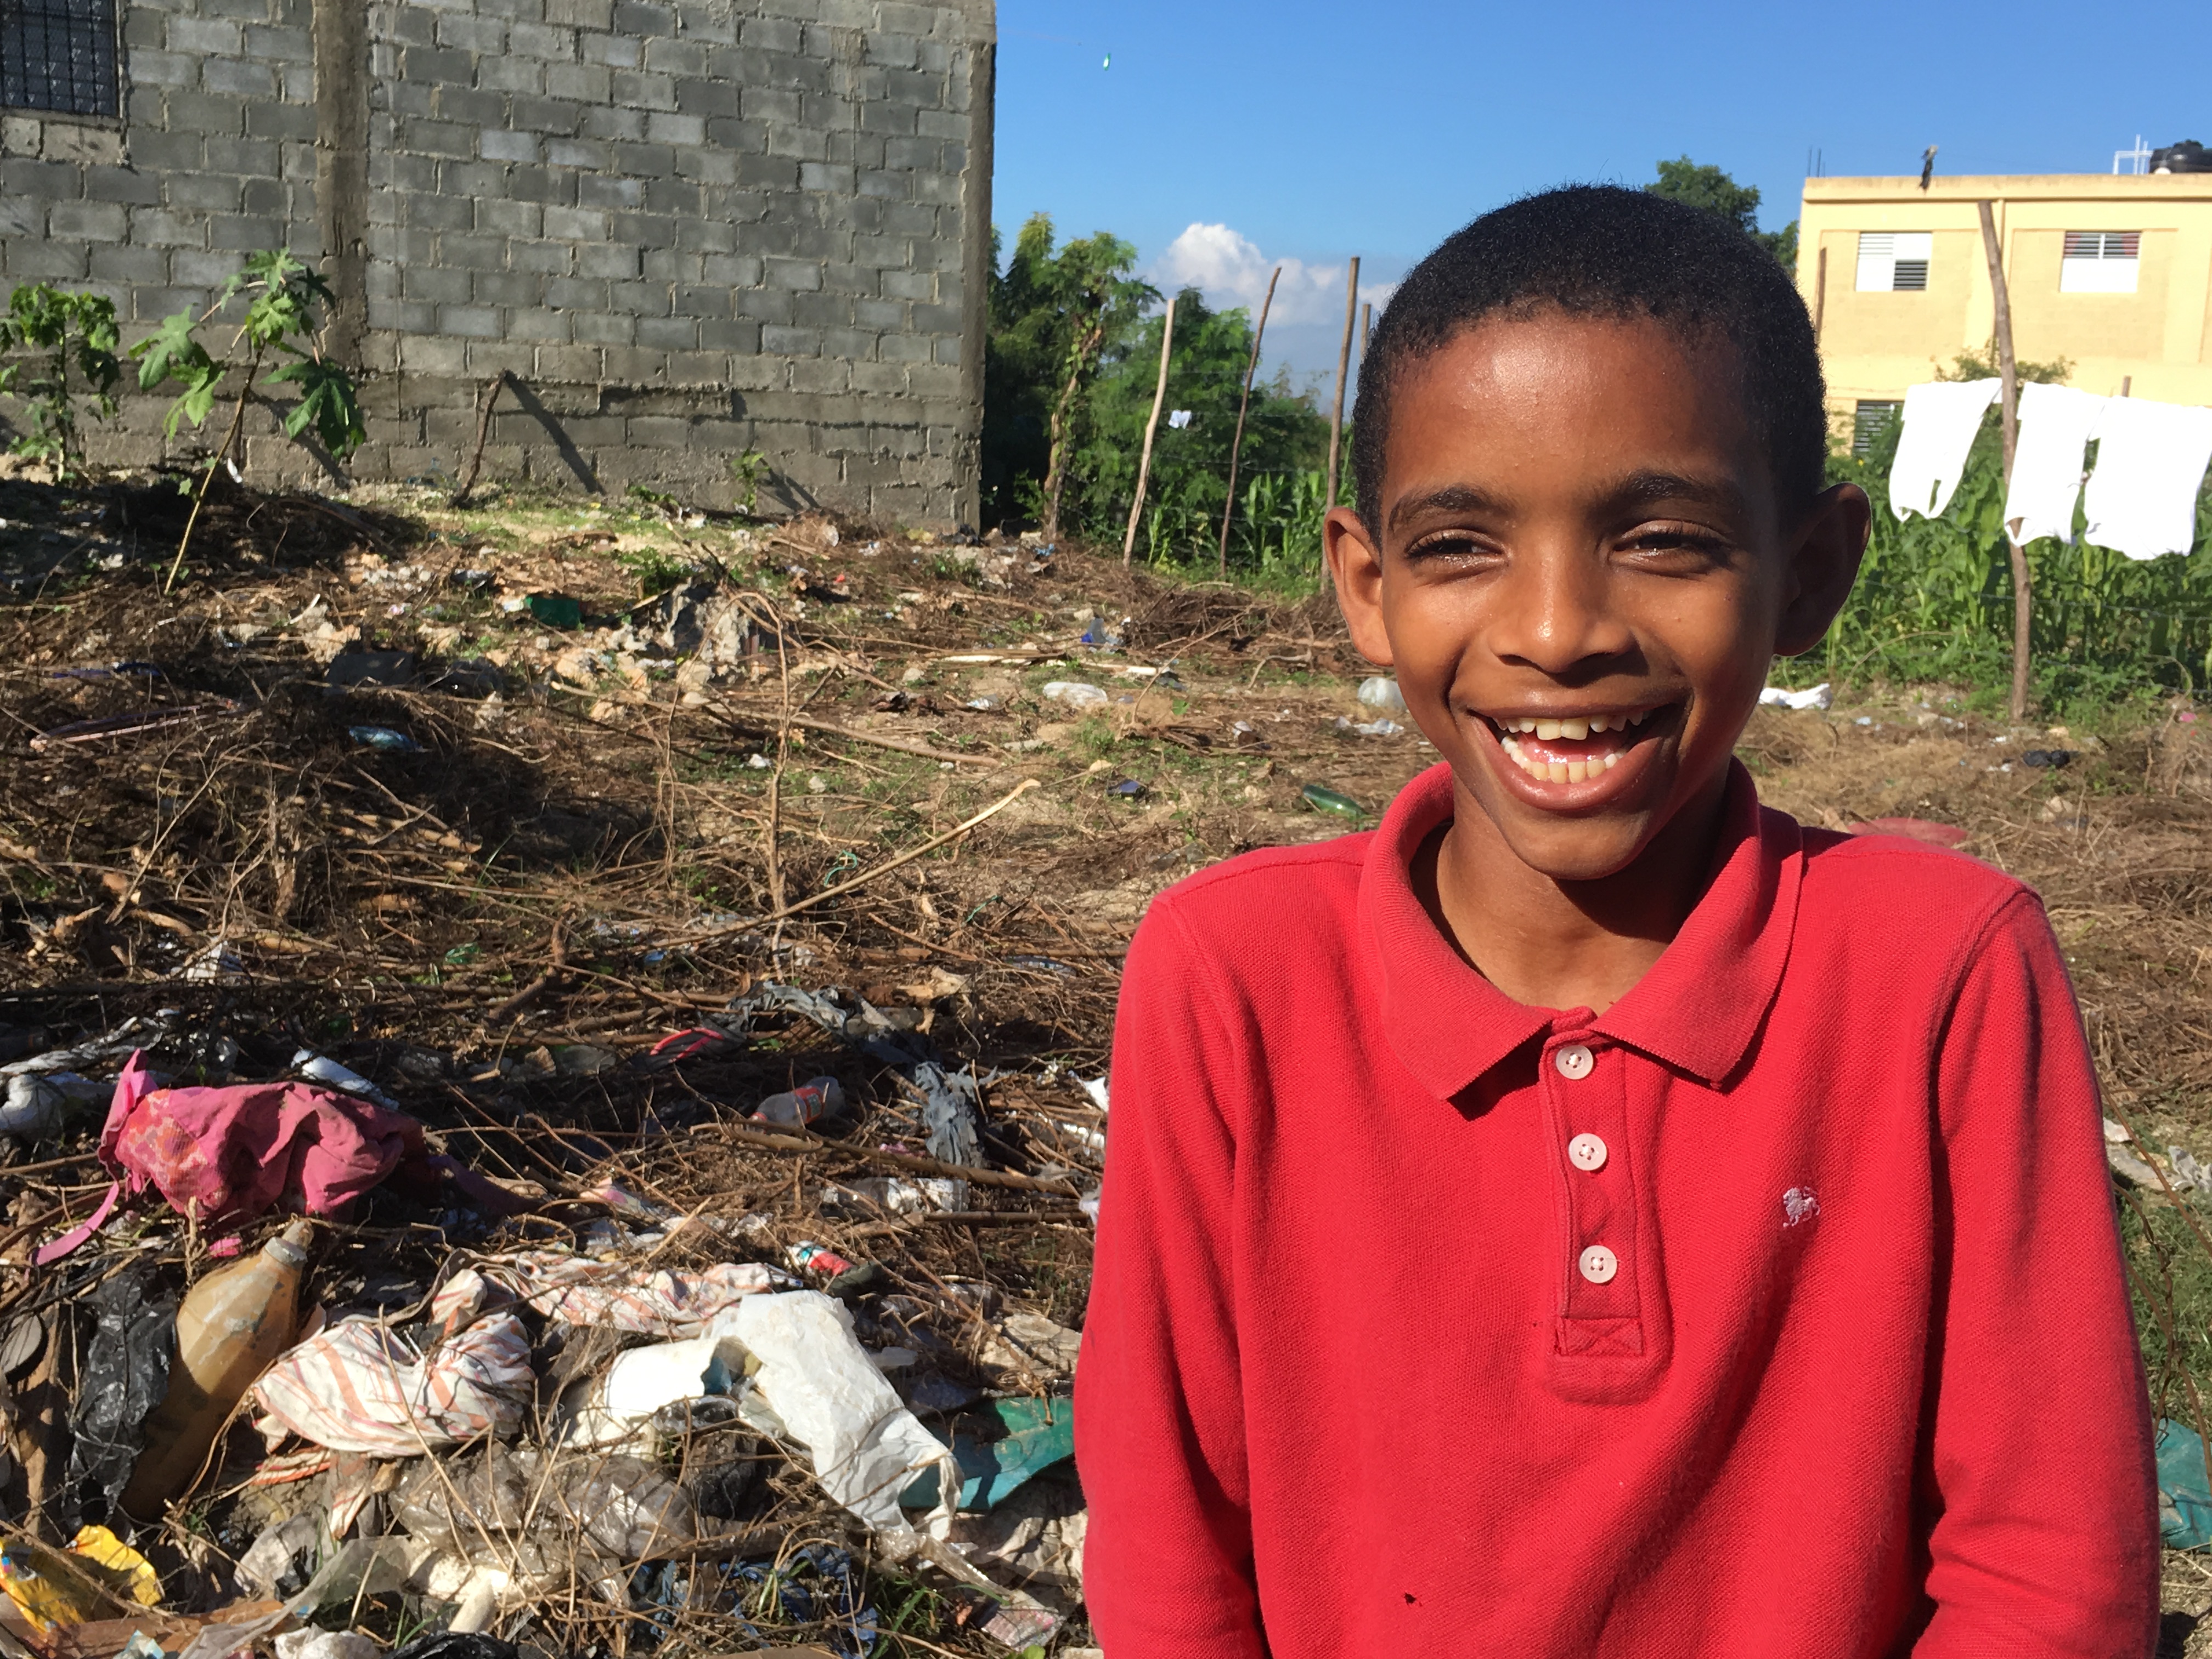  Save the Children y GSK promueven la salud comunitaria en la República Dominicana